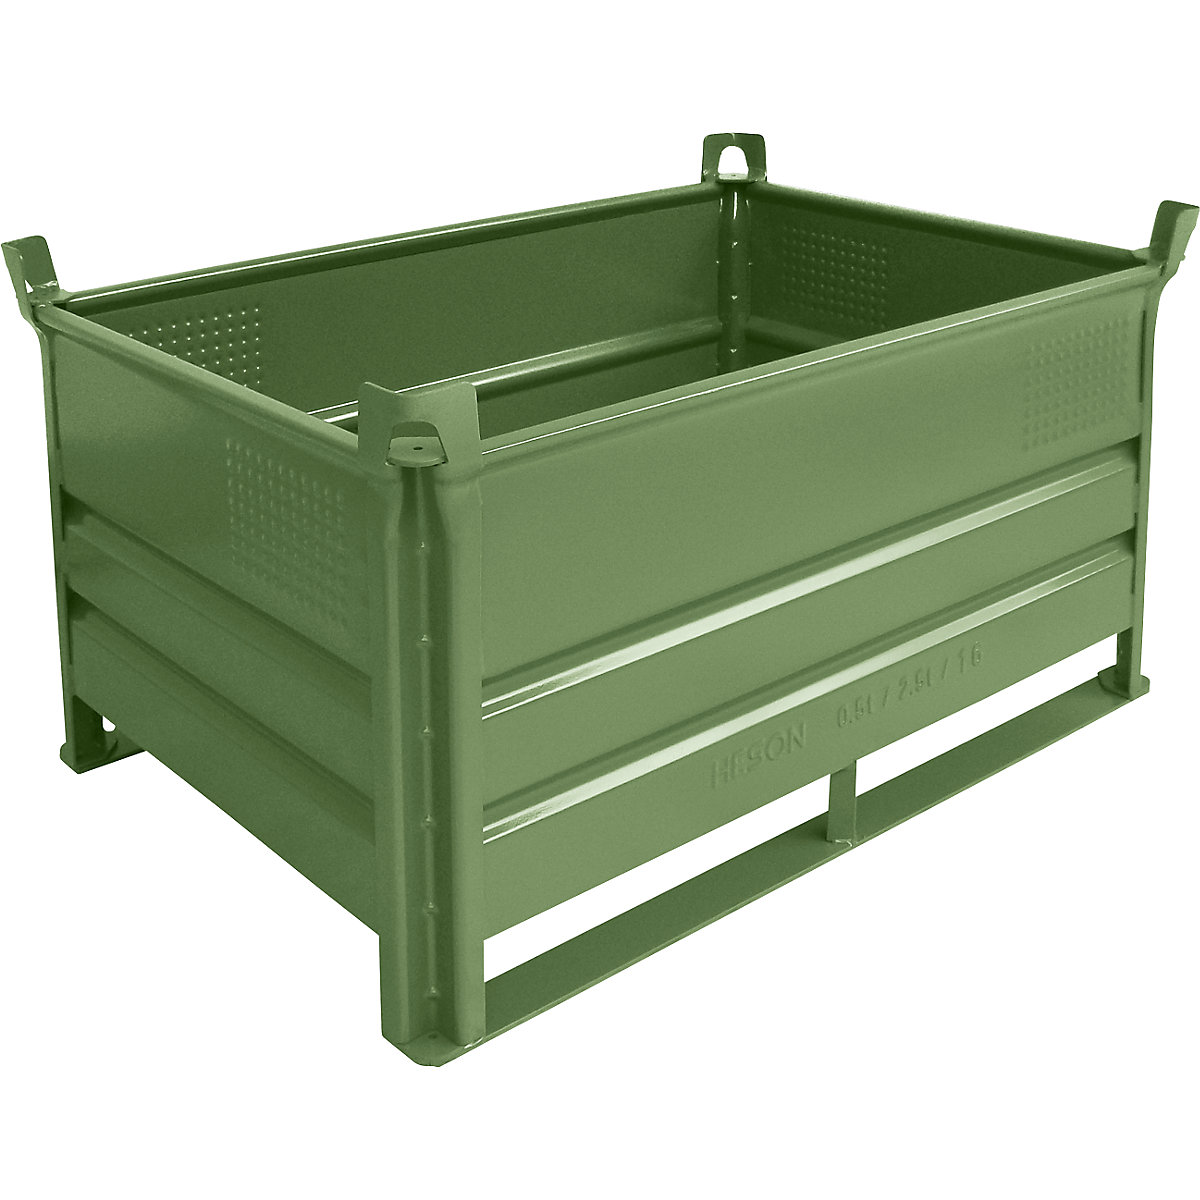 Heson Stapelbehälter mit Kufen, LxB 1200 x 800 mm, Traglast 500 kg, grün, ab 10 Stk